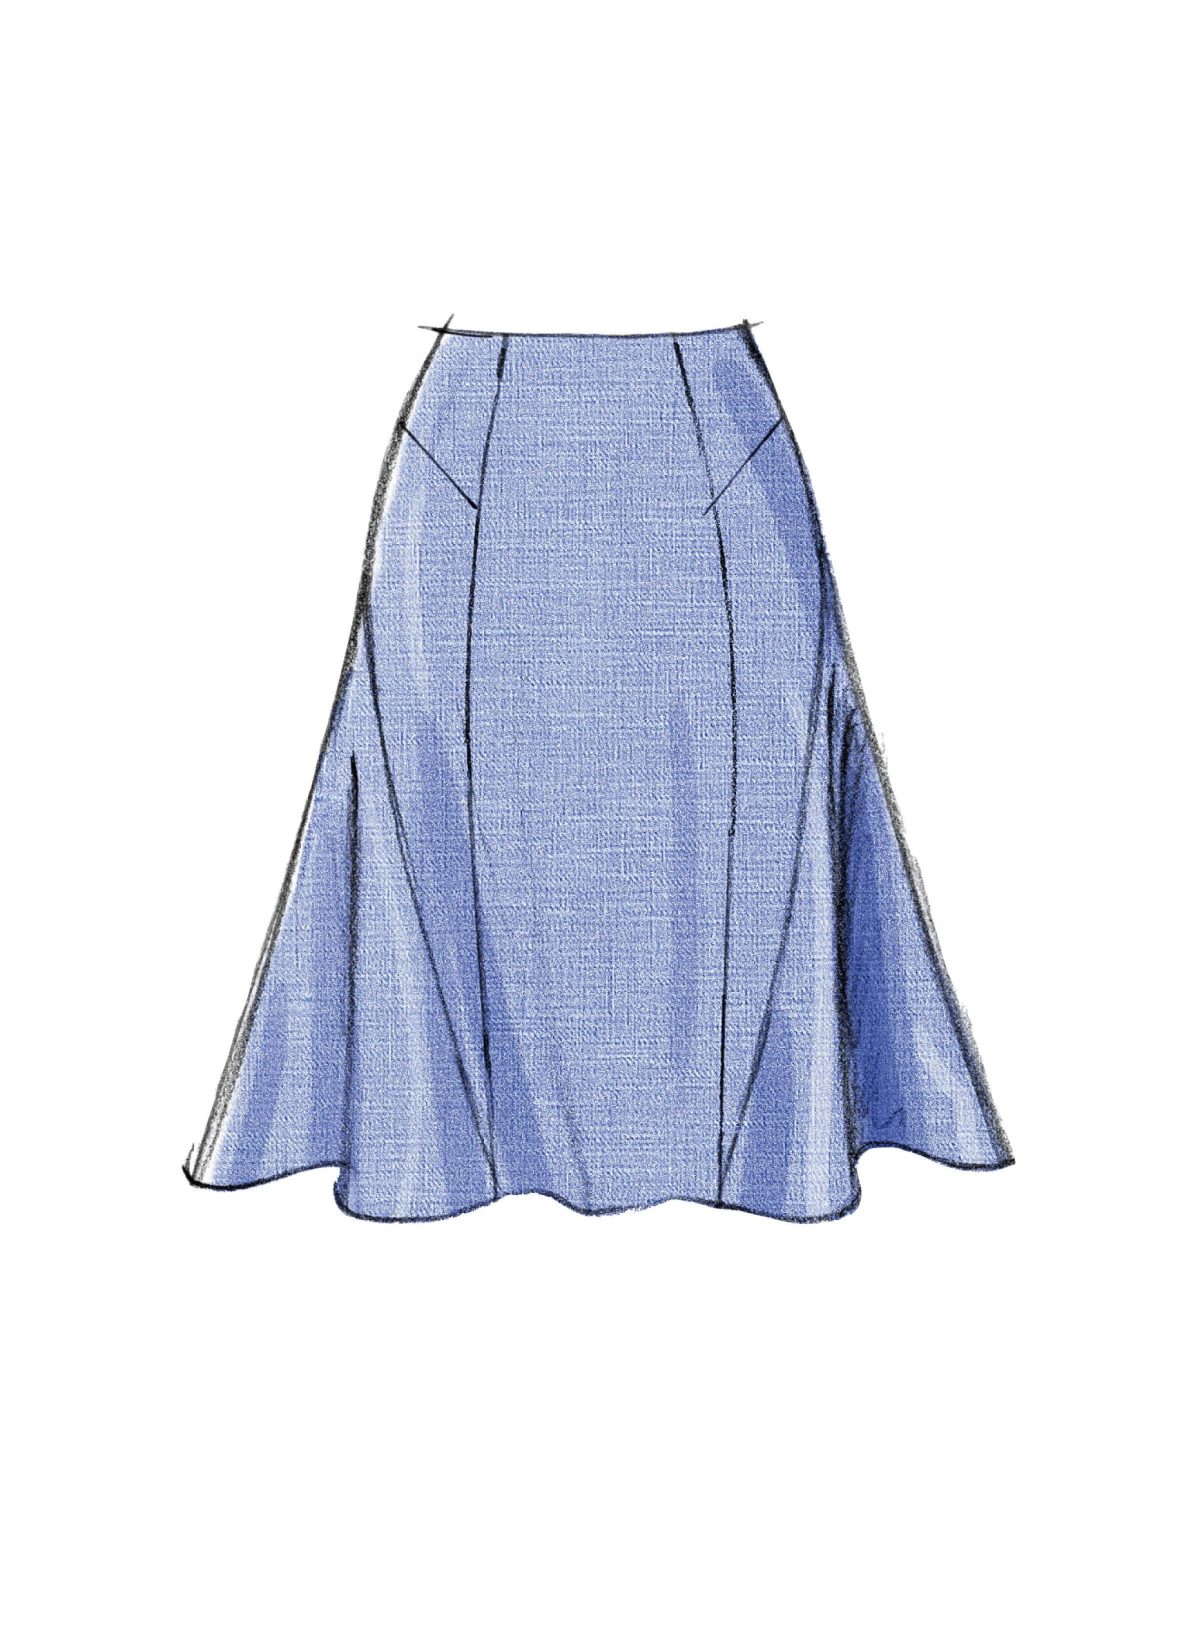 Vogue Patterns V8750 Misses' Skirt